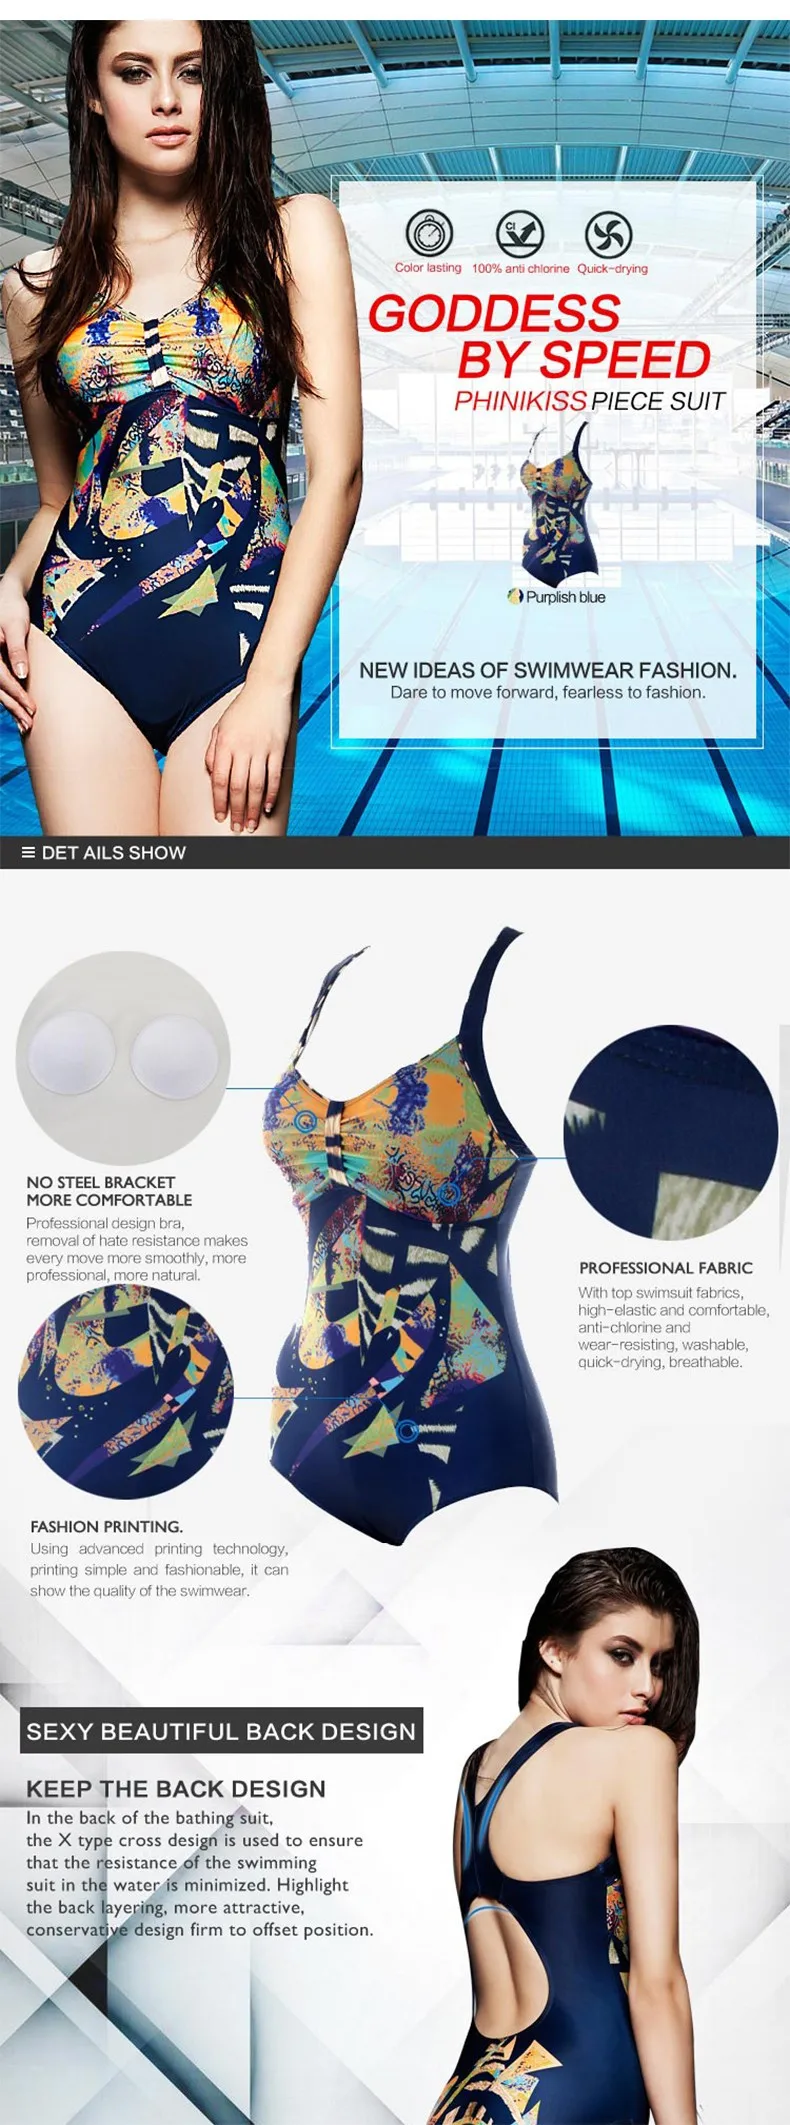 Цветной женский купальник с принтом, профессиональный спортивный комбинезон, женские классические купальники для похудения, Saida De Praia, бренд